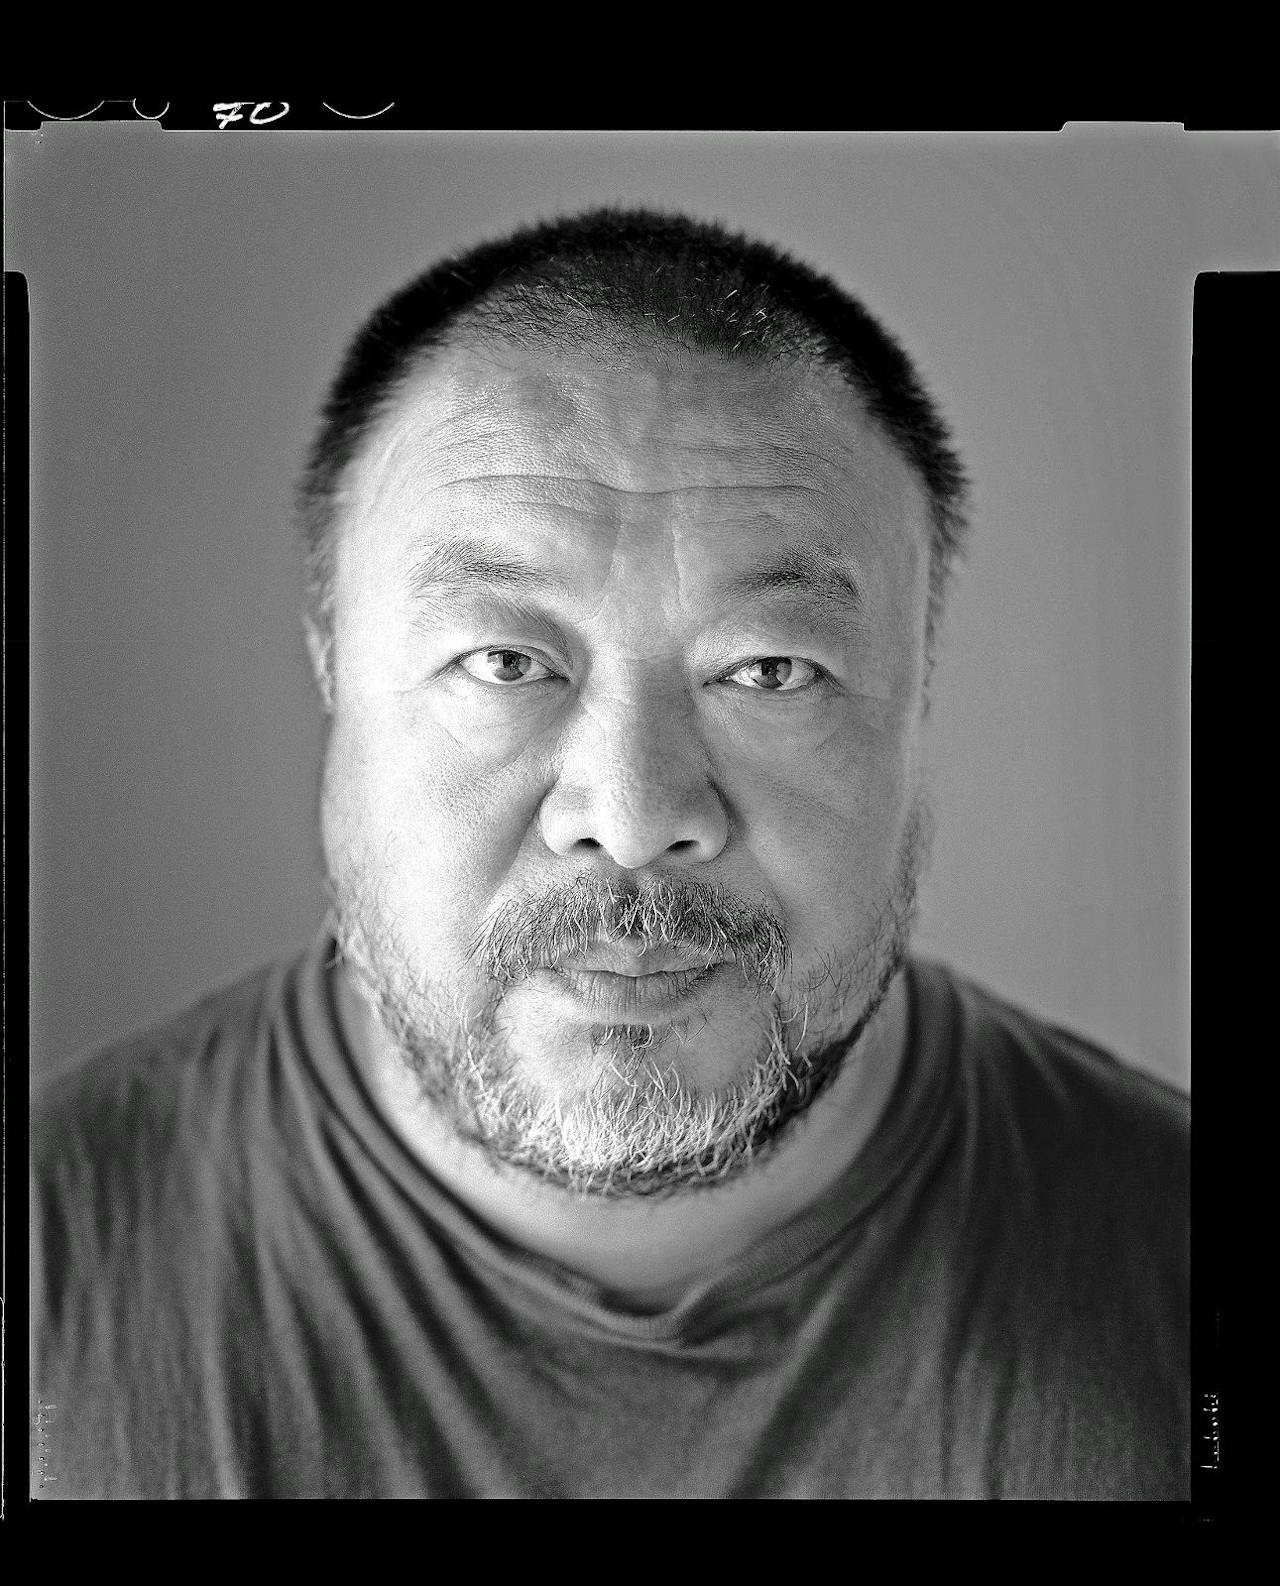 Tijdschrift Art  Review plaatst  Ai Weiwei in de lijst van invloedrijke kunstpersoonlijk-heden dit jaar op de vijftiende plek.